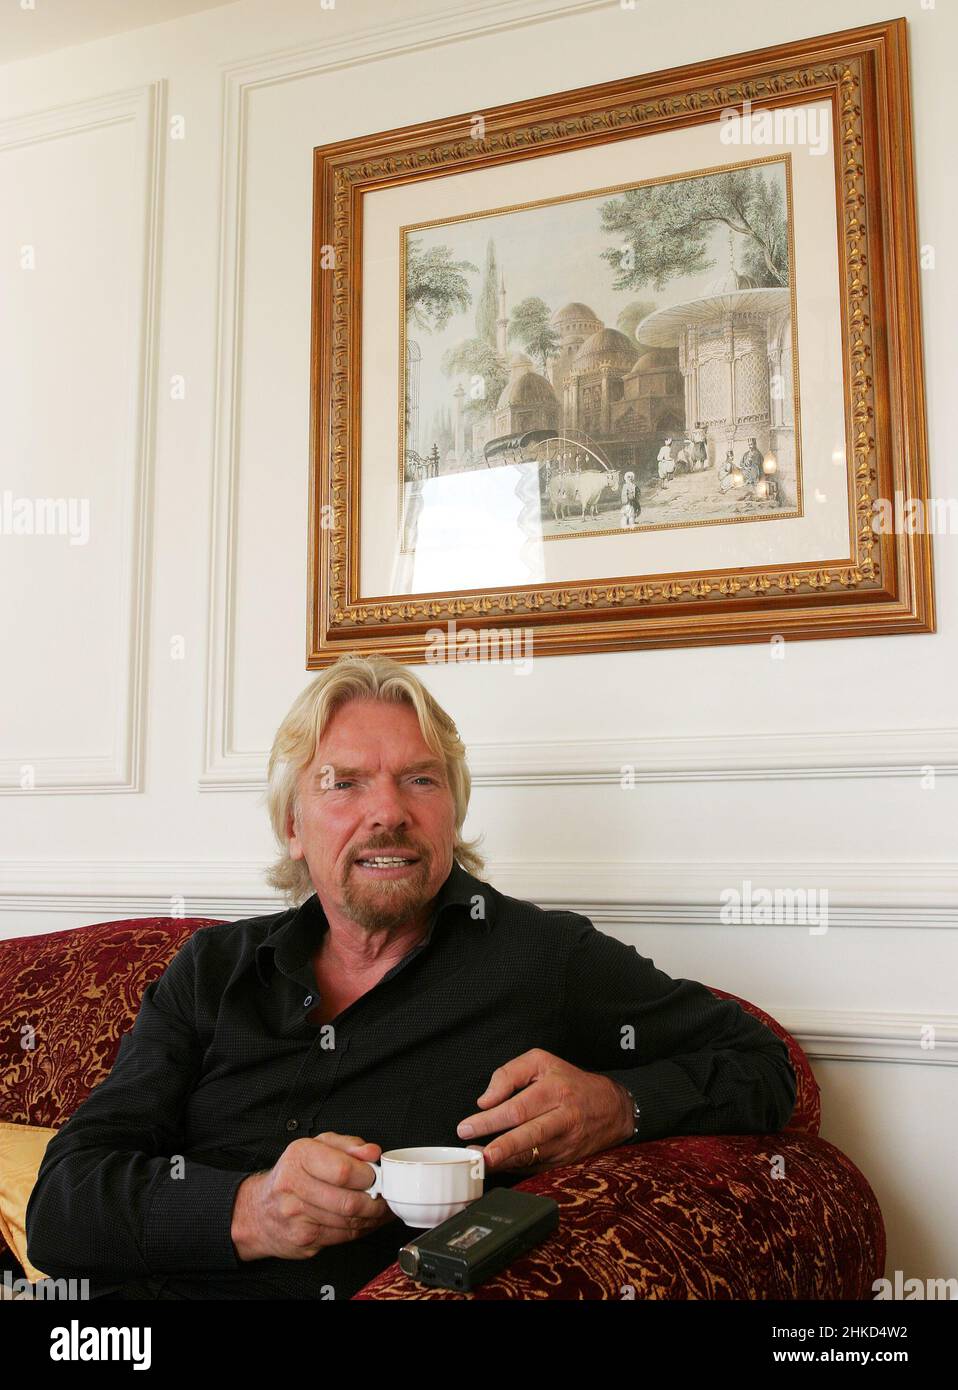 ISTANBUL, TÜRKEI - 17. NOVEMBER: Der berühmte englische Wirtschaftsmagnat Sir Richard Branson am 17. November 2007 in Istanbul, Türkei. Er ist Gründer der Virgin Group, die mehr als 400 Unternehmen umfasst. Stockfoto